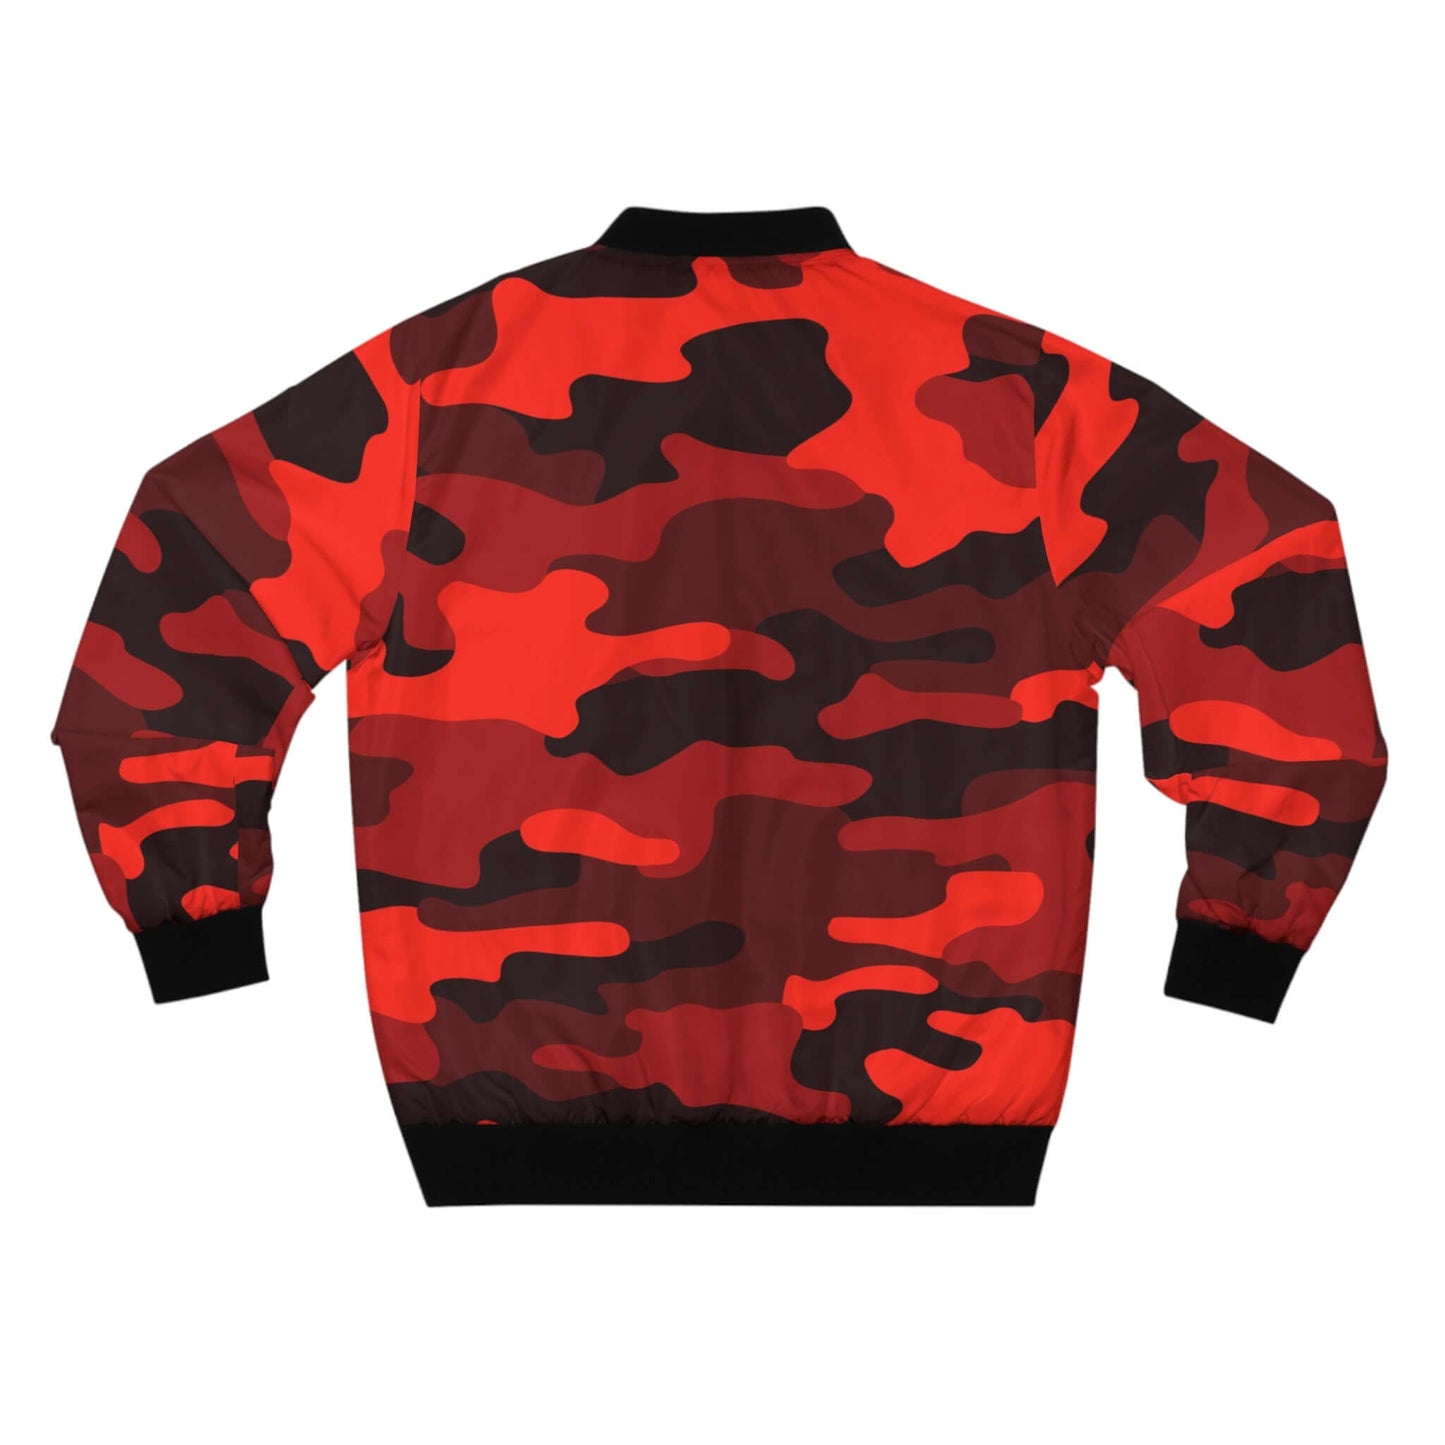 Blouson aviateur camouflage rouge écarlate et noir